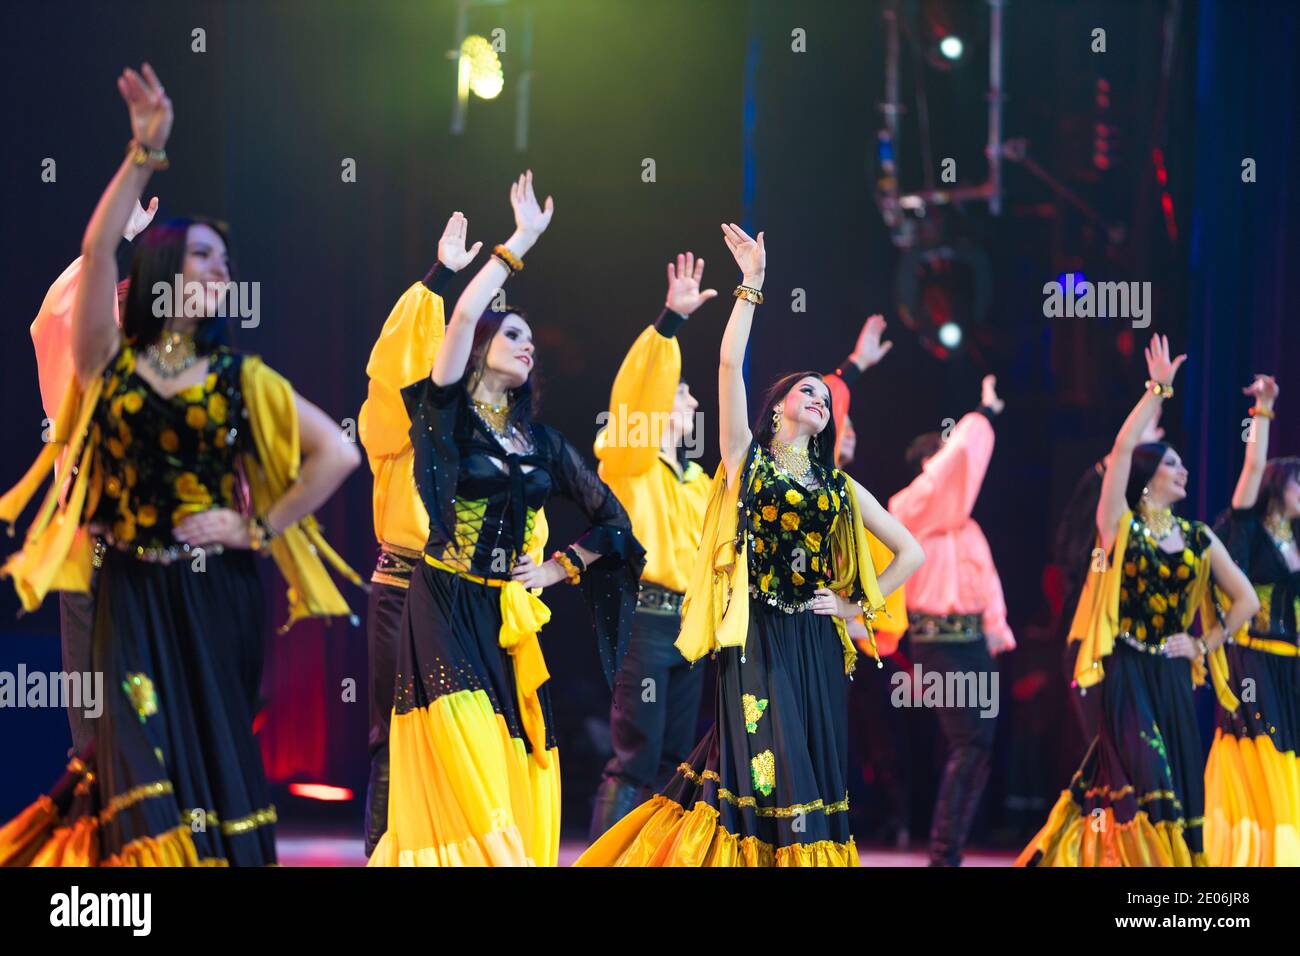 Una squadra di musicisti, cantanti e ballerini in costumi gitani che cantano e ballano sul palco Foto Stock